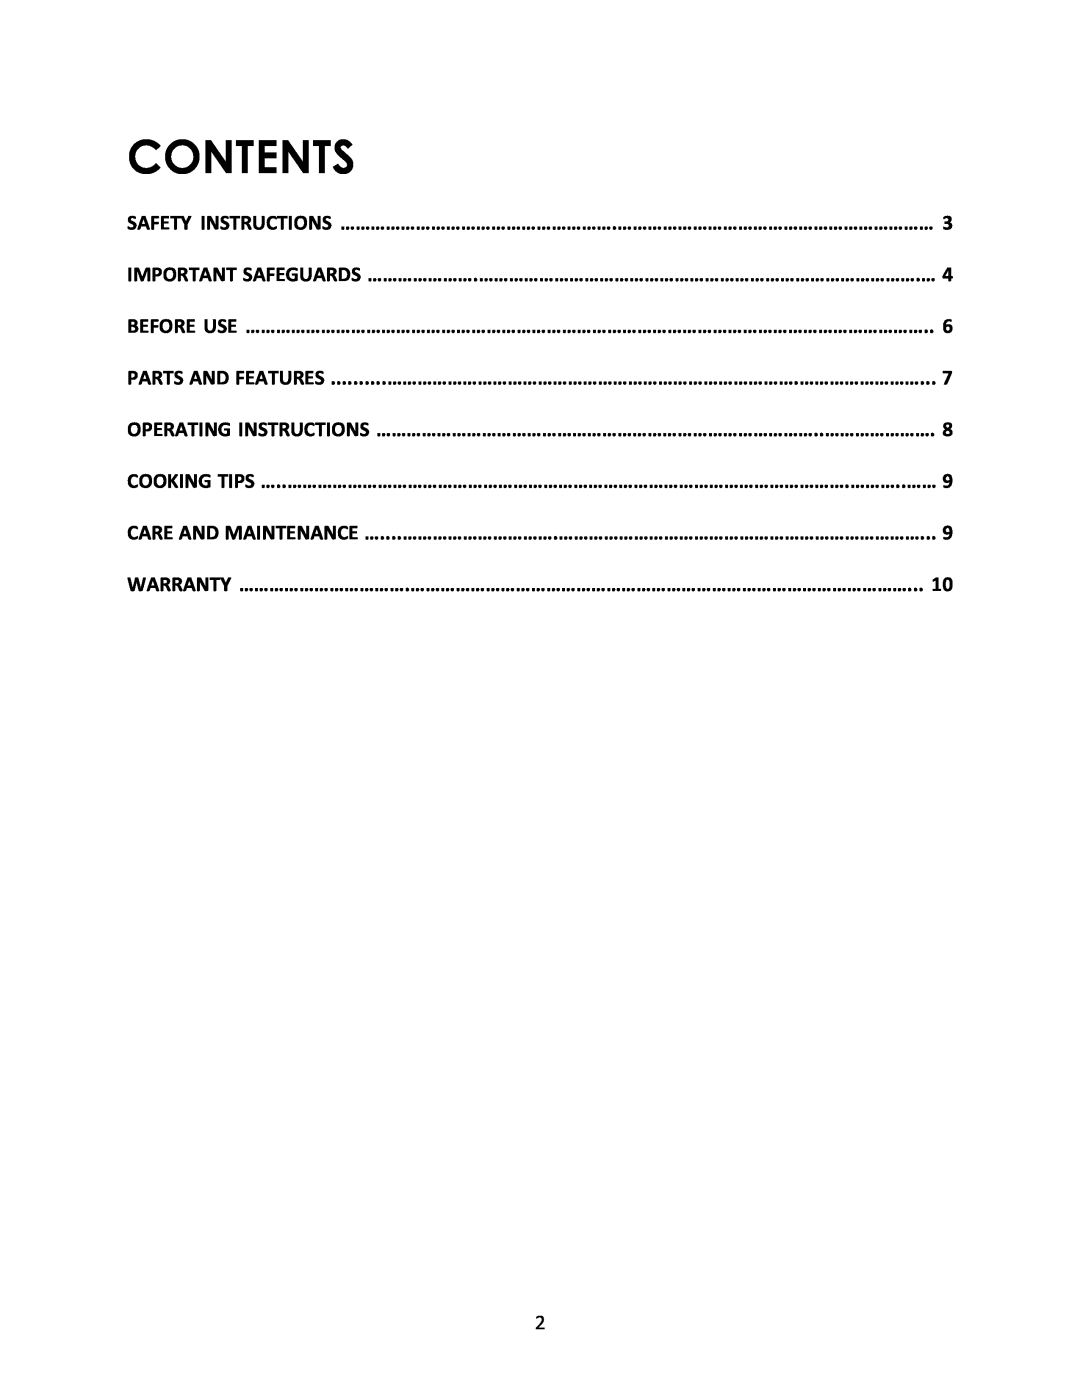 Magic Chef MCSG19B instruction manual Contents 